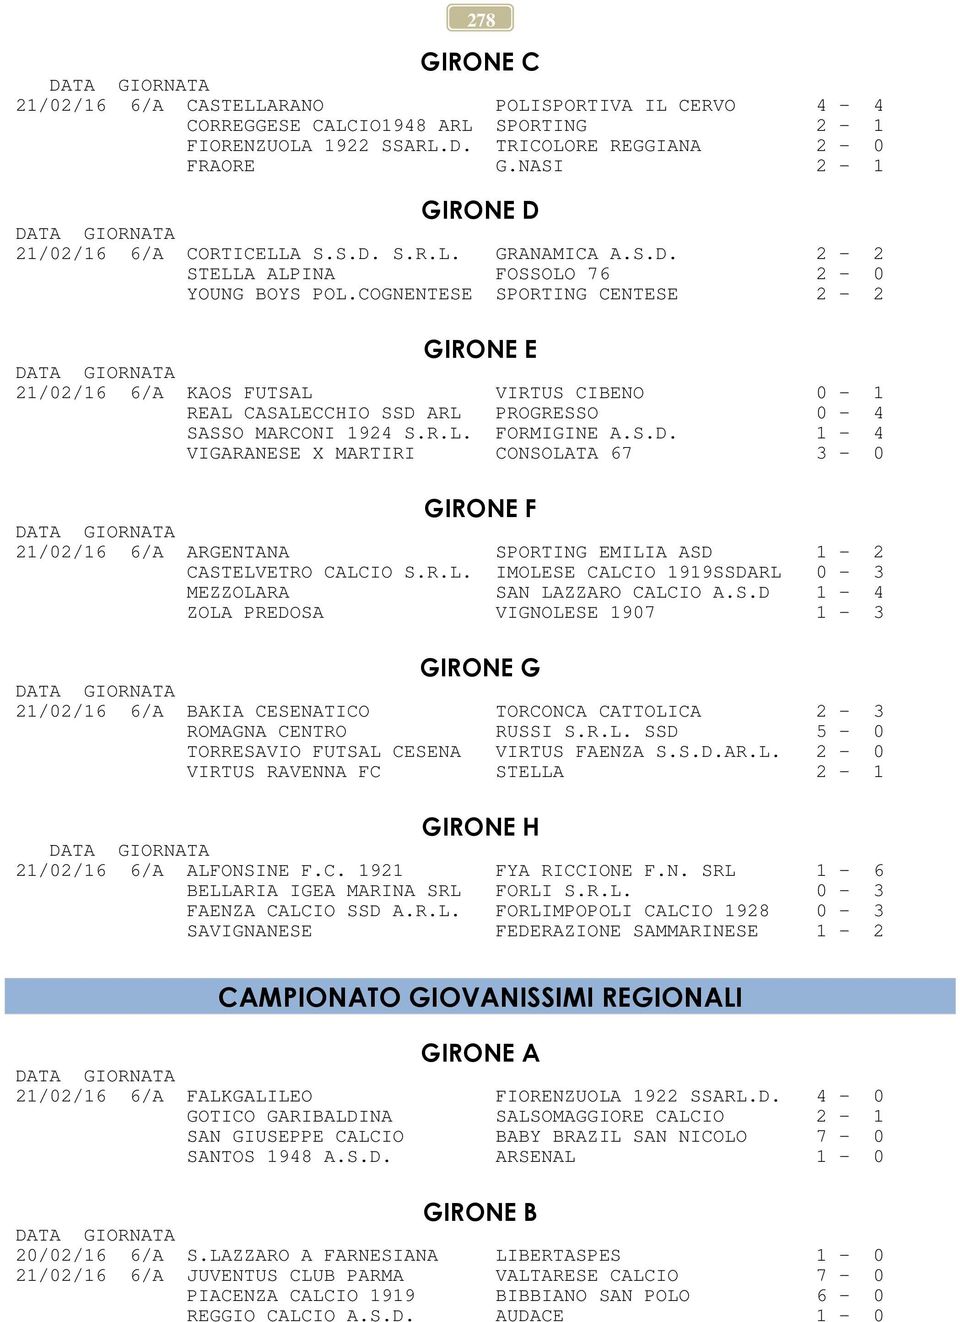 COGNENTESE SPORTING CENTESE 2-2 GIRONE E 21/02/16 6/A KAOS FUTSAL VIRTUS CIBENO 0-1 REAL CASALECCHIO SSD 